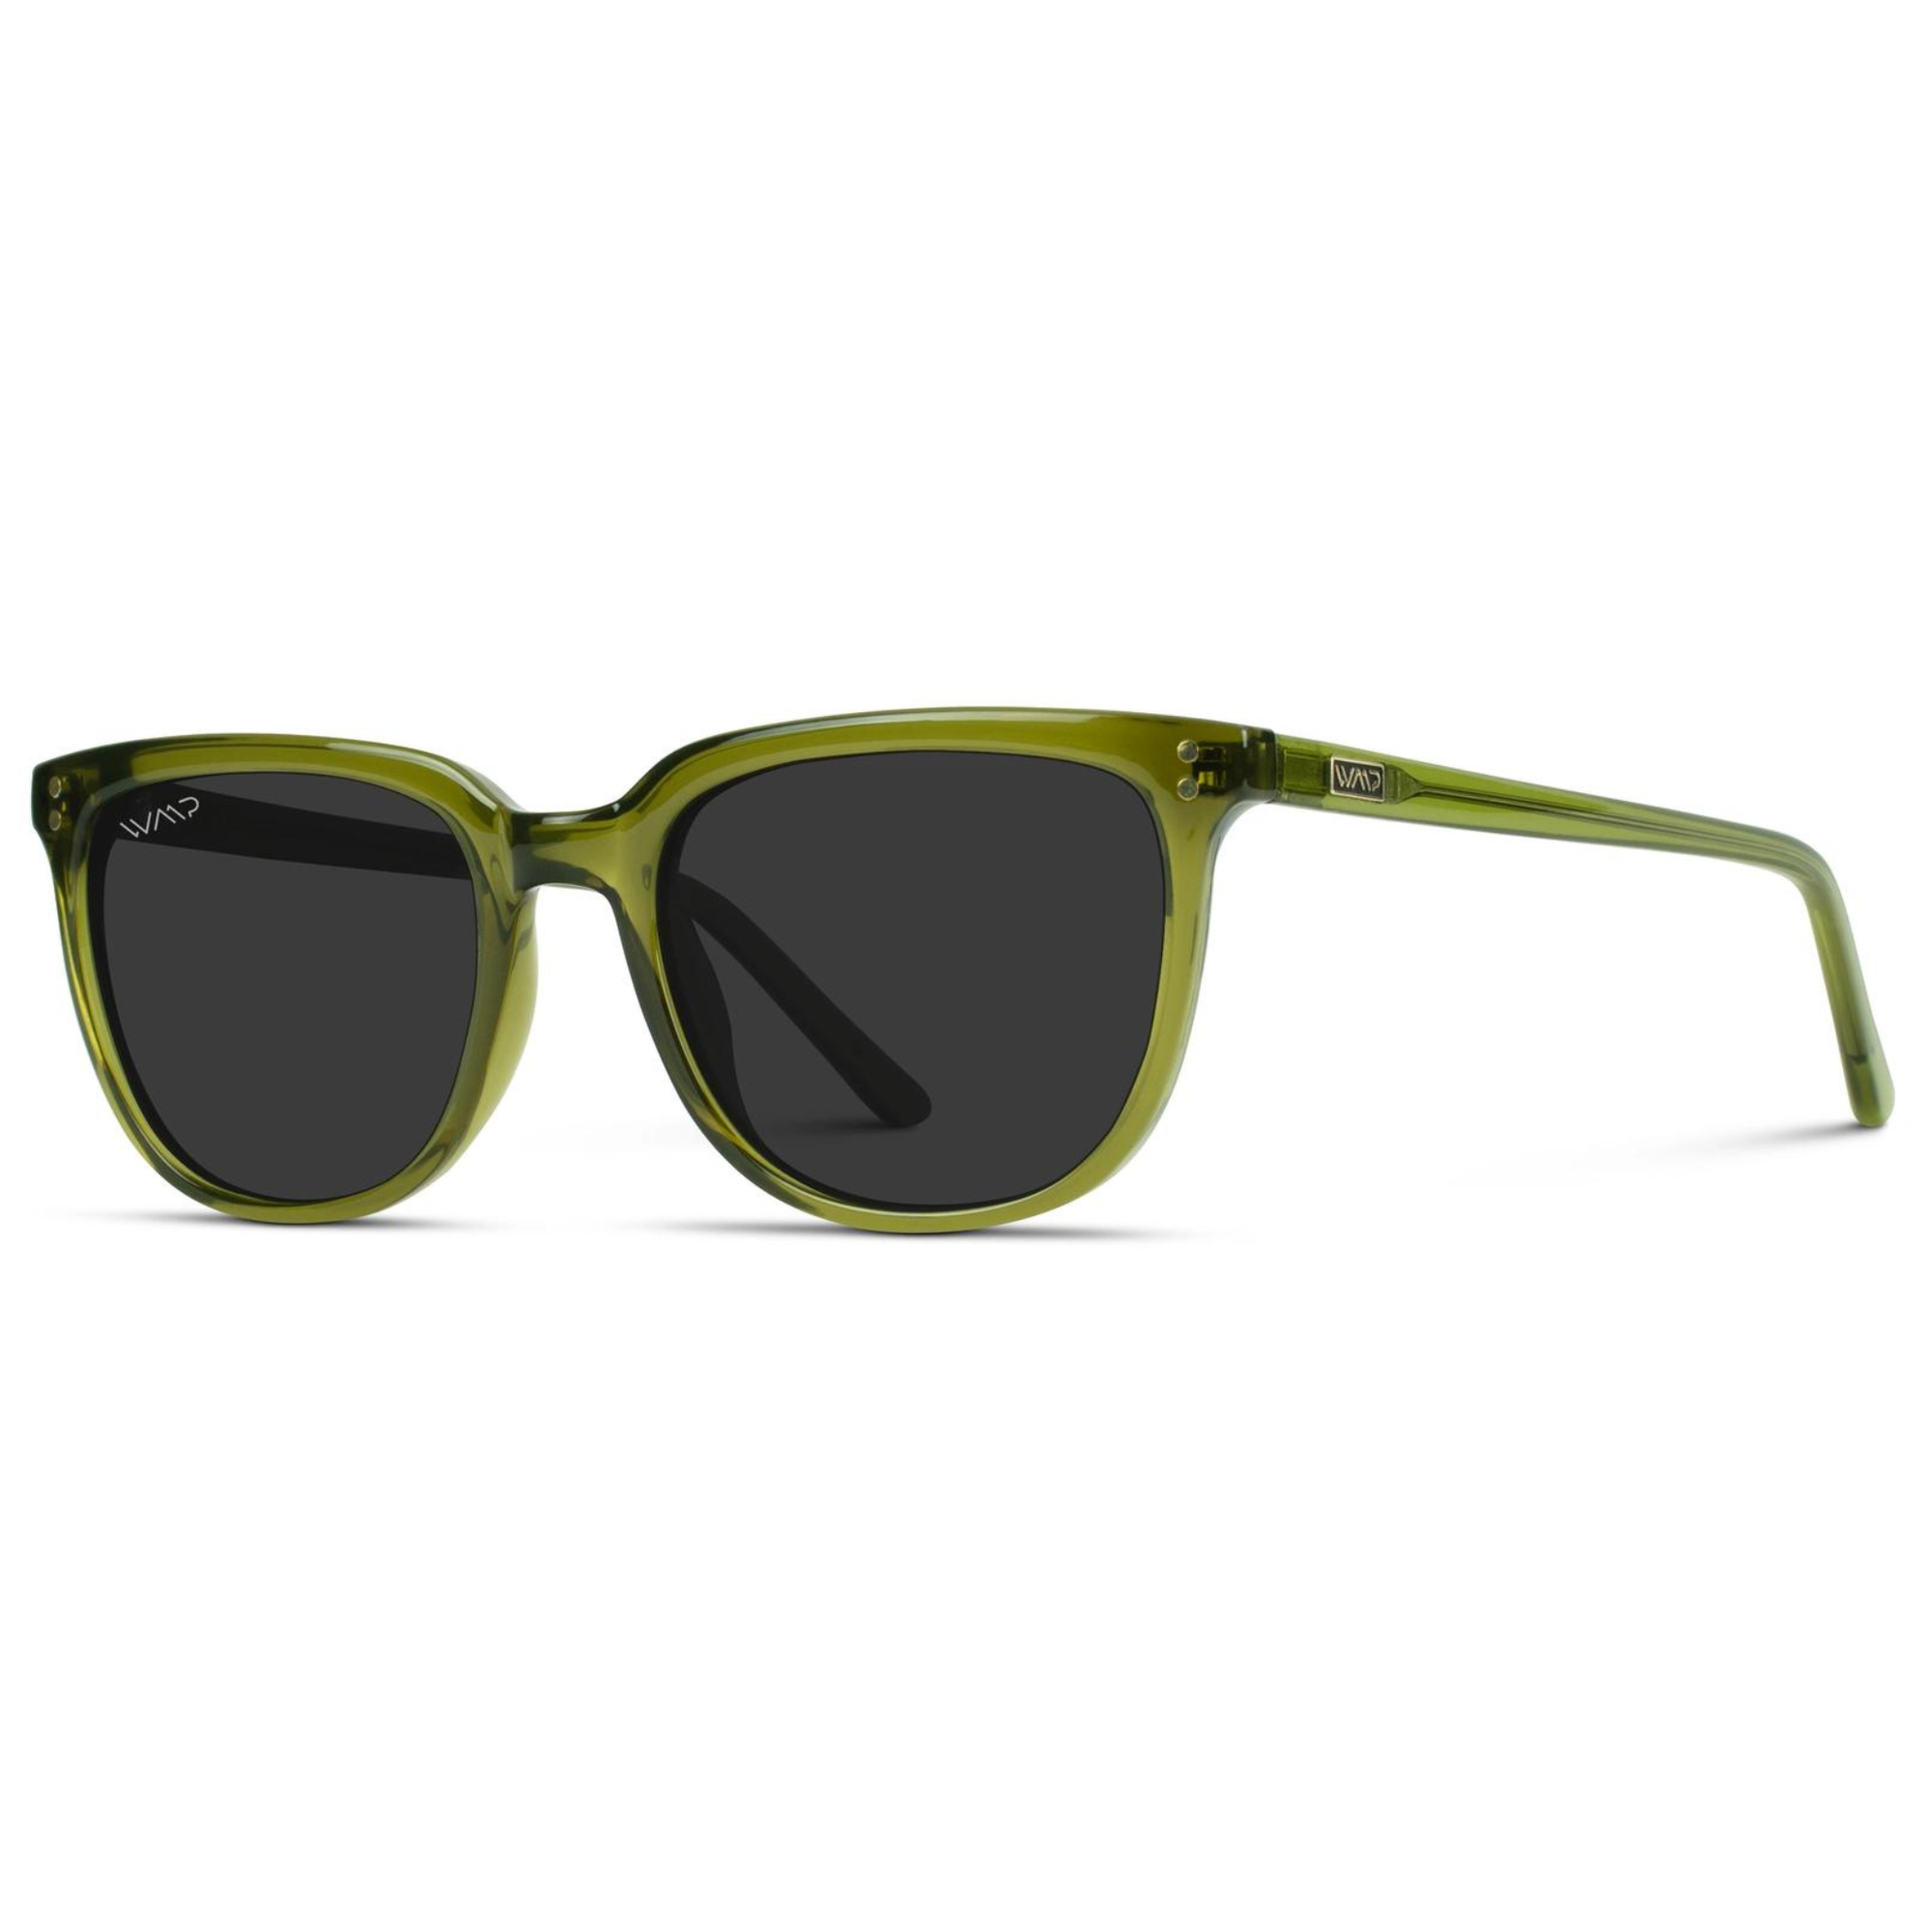 Abner - Classic Retro Sunglasses